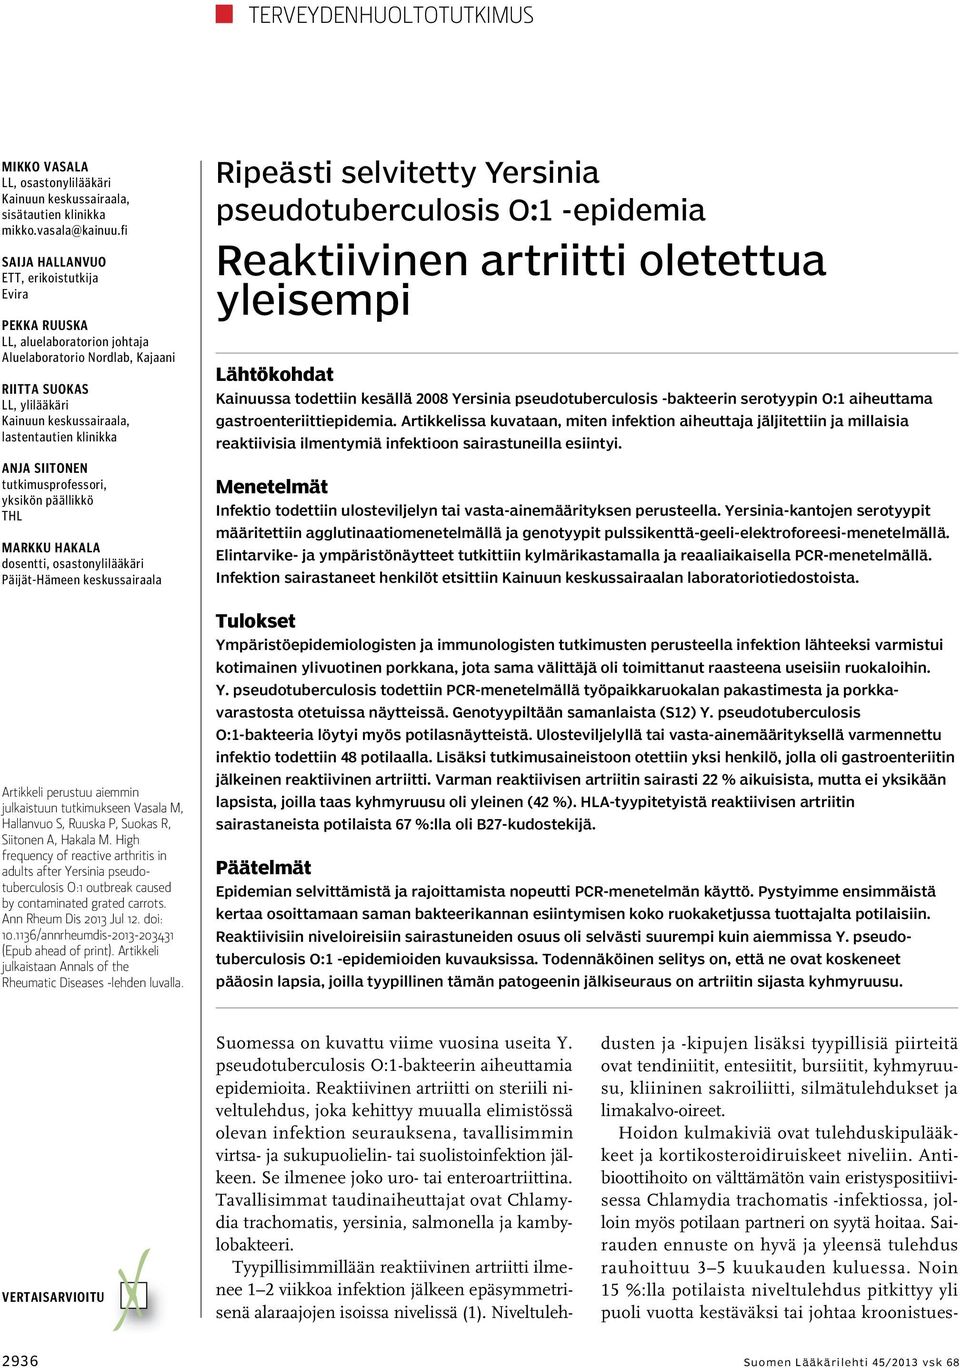 Anja Siitonen tutkimusprofessori, yksikön päällikkö THL Markku Hakala dosentti, osastonylilääkäri Päijät-Hämeen keskussairaala Artikkeli perustuu aiemmin julkaistuun tutkimukseen Vasala M, Hallanvuo